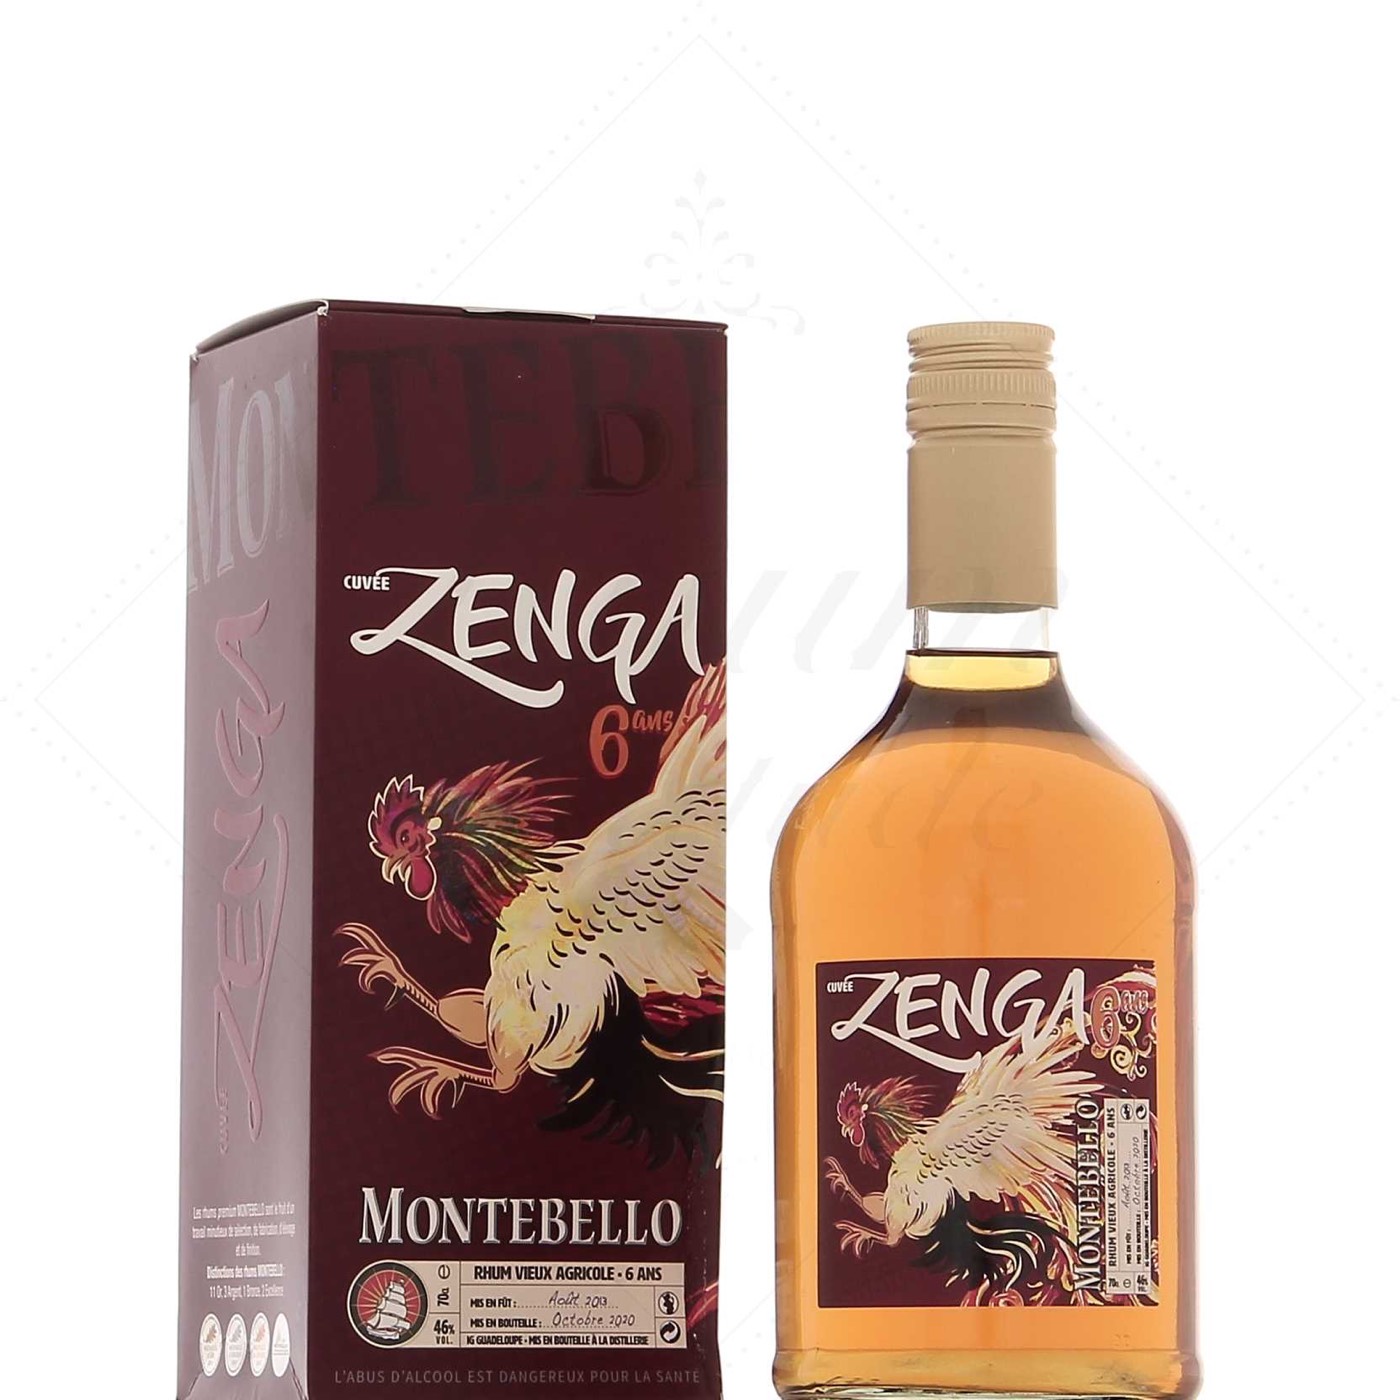 Bottle image of Montebello Zenga